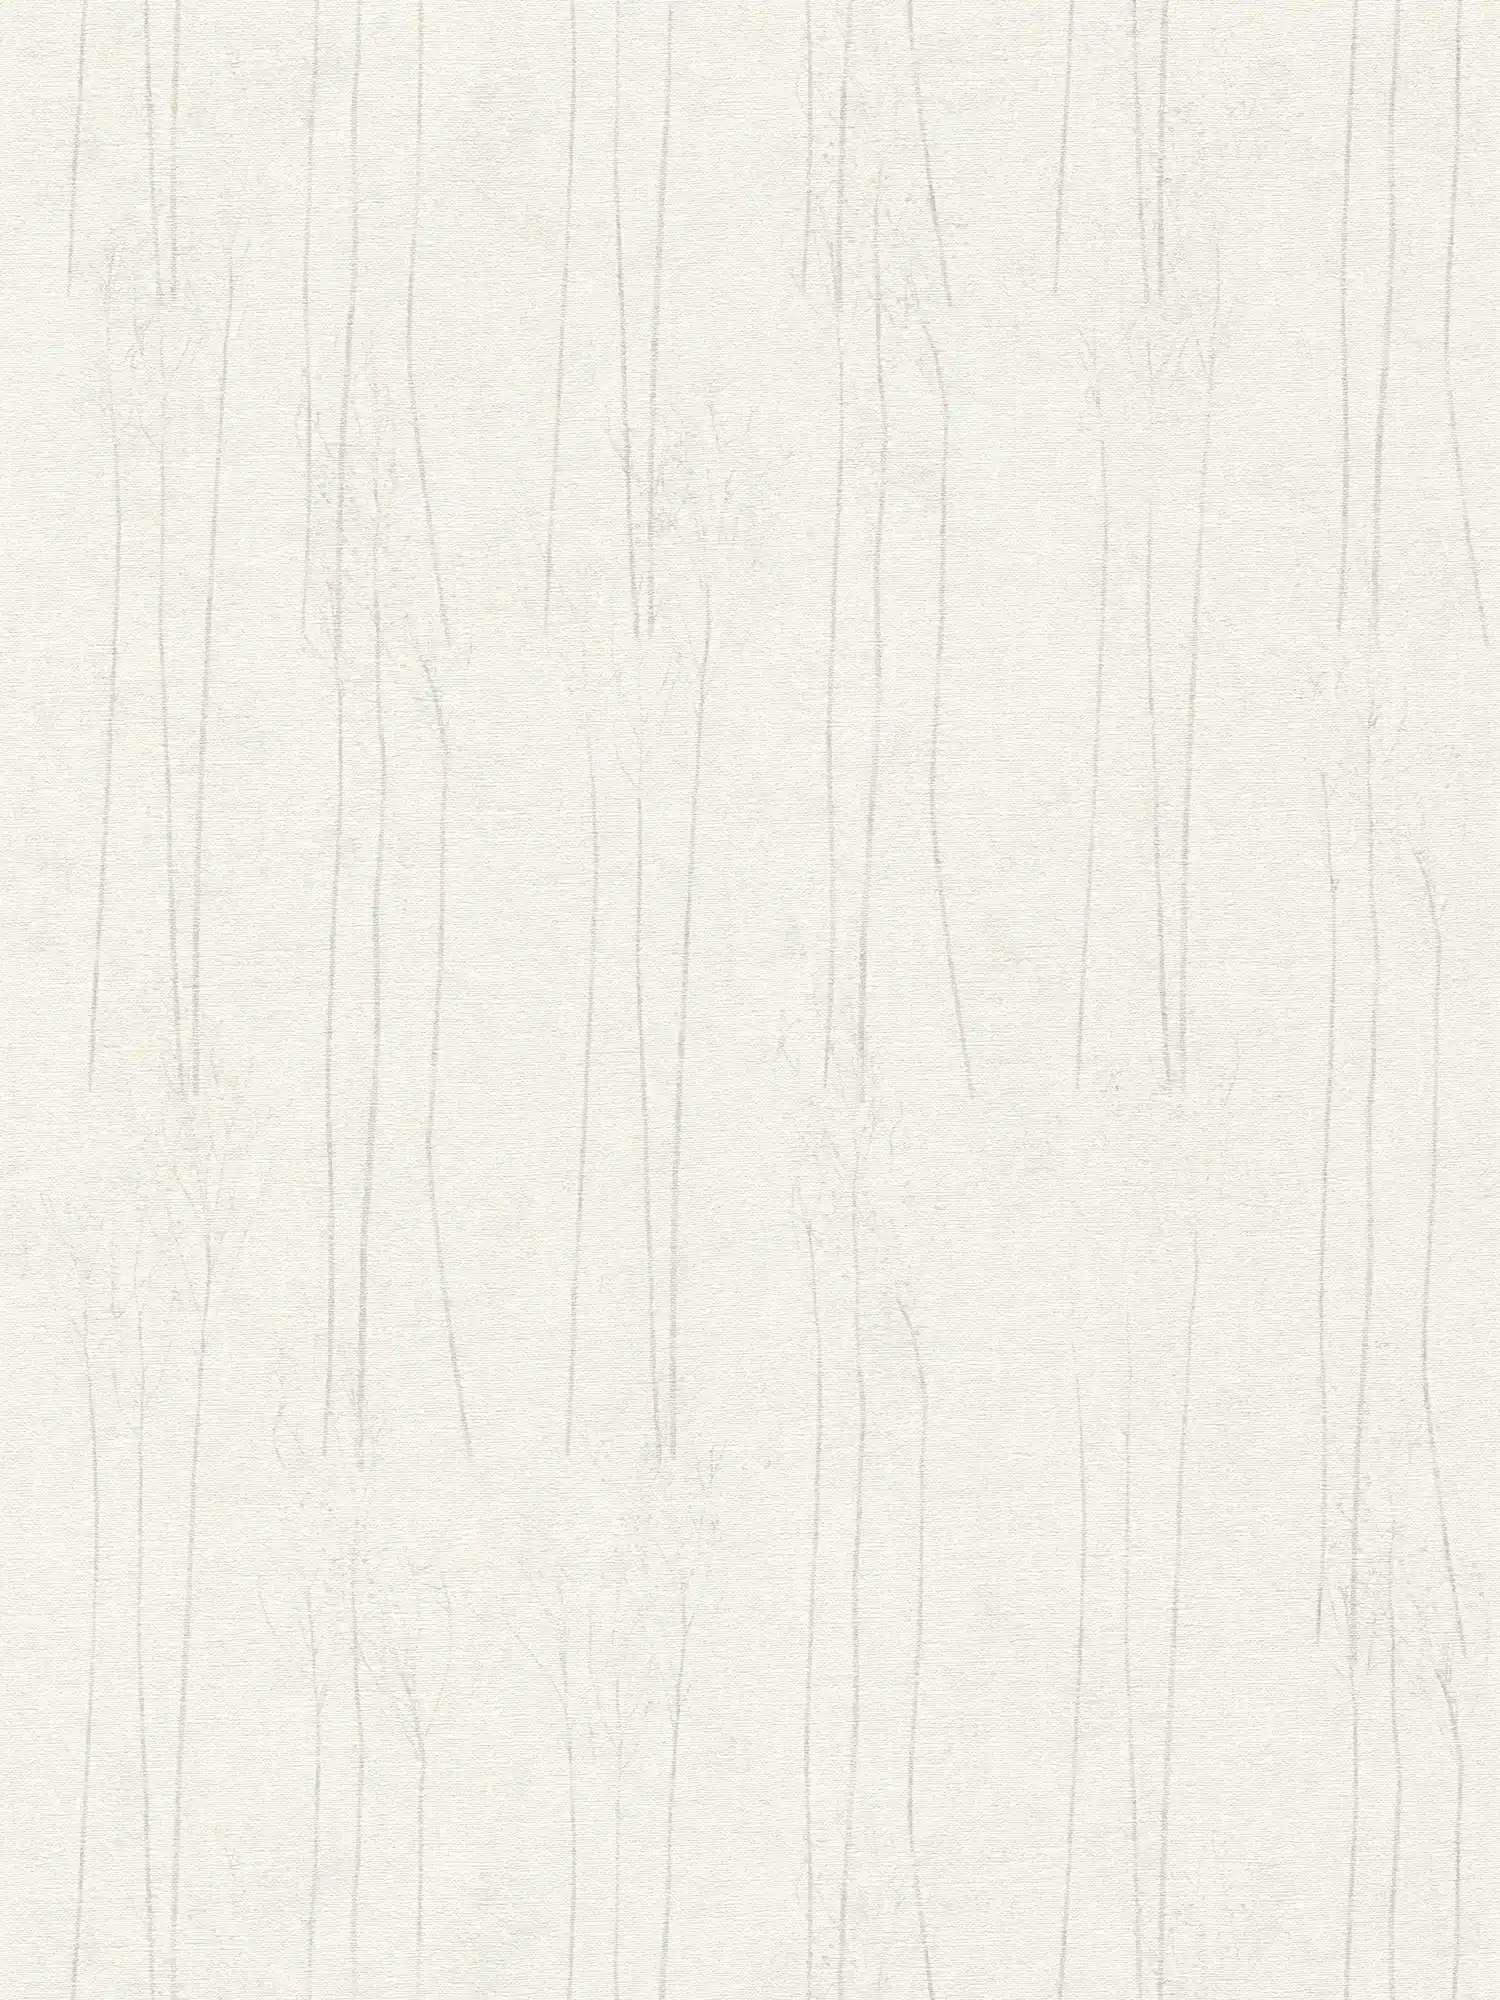 Wit behang Scandi stijl met natuurmotief - grijs, wit
